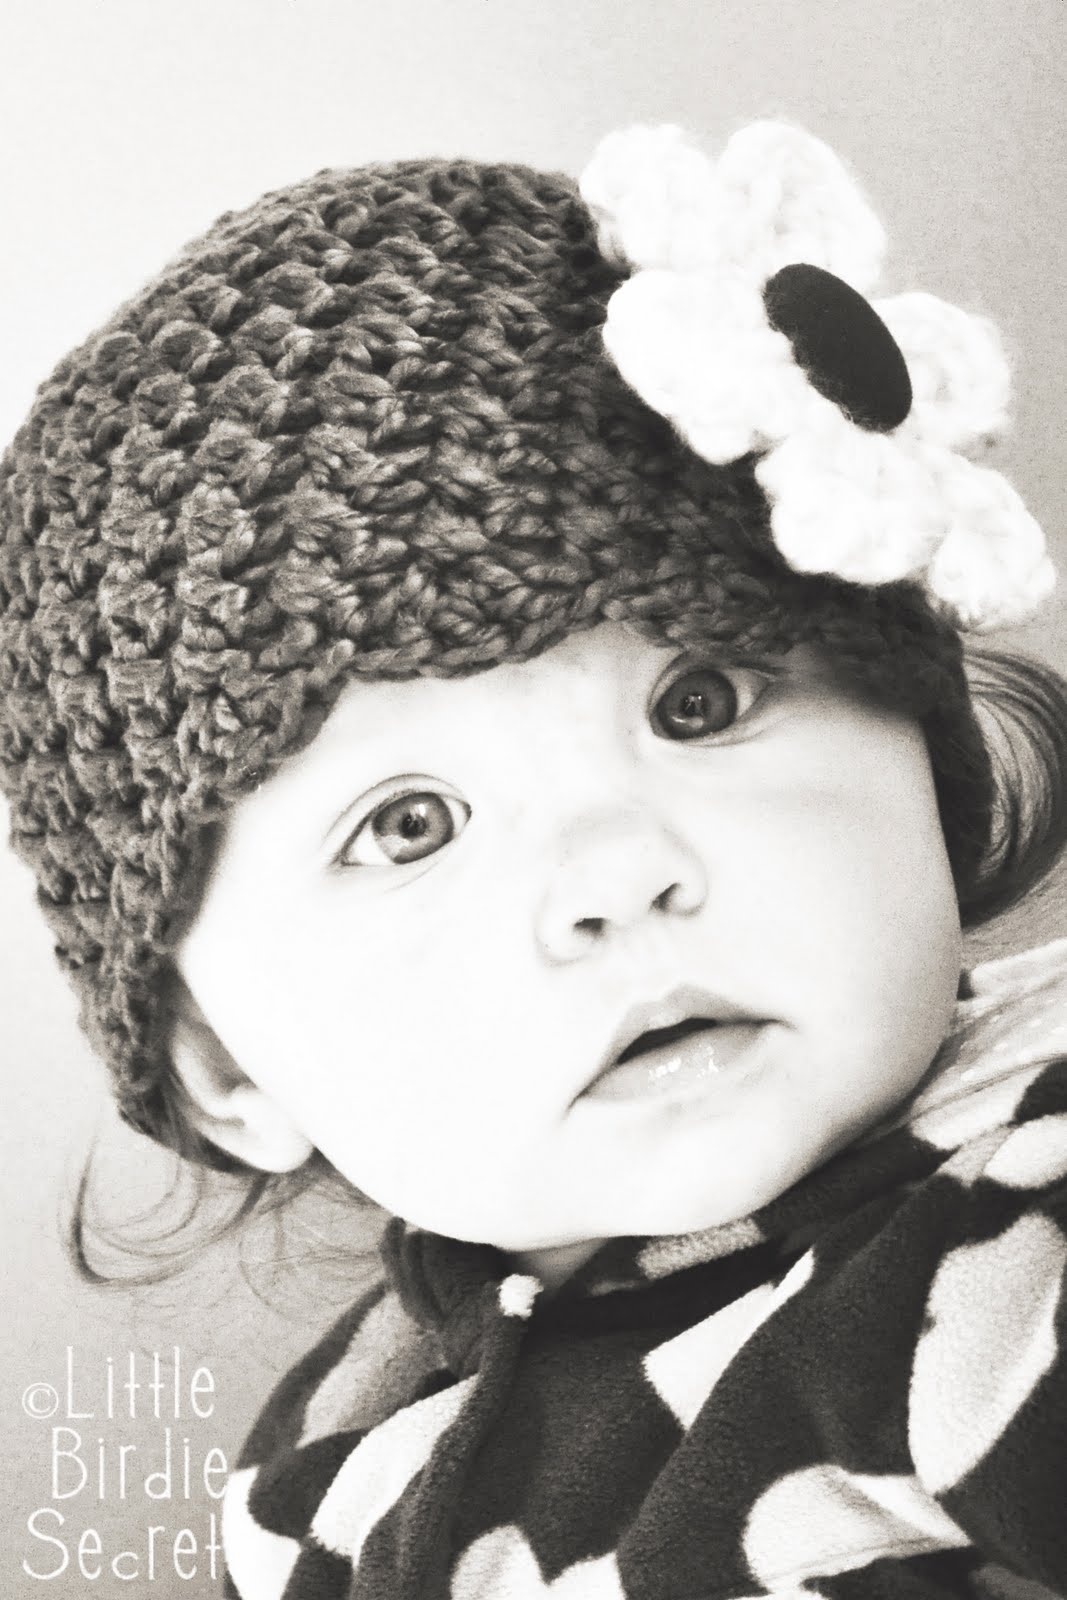 Crochet Pattern Central - Free Baby Hats Crochet Pattern Link